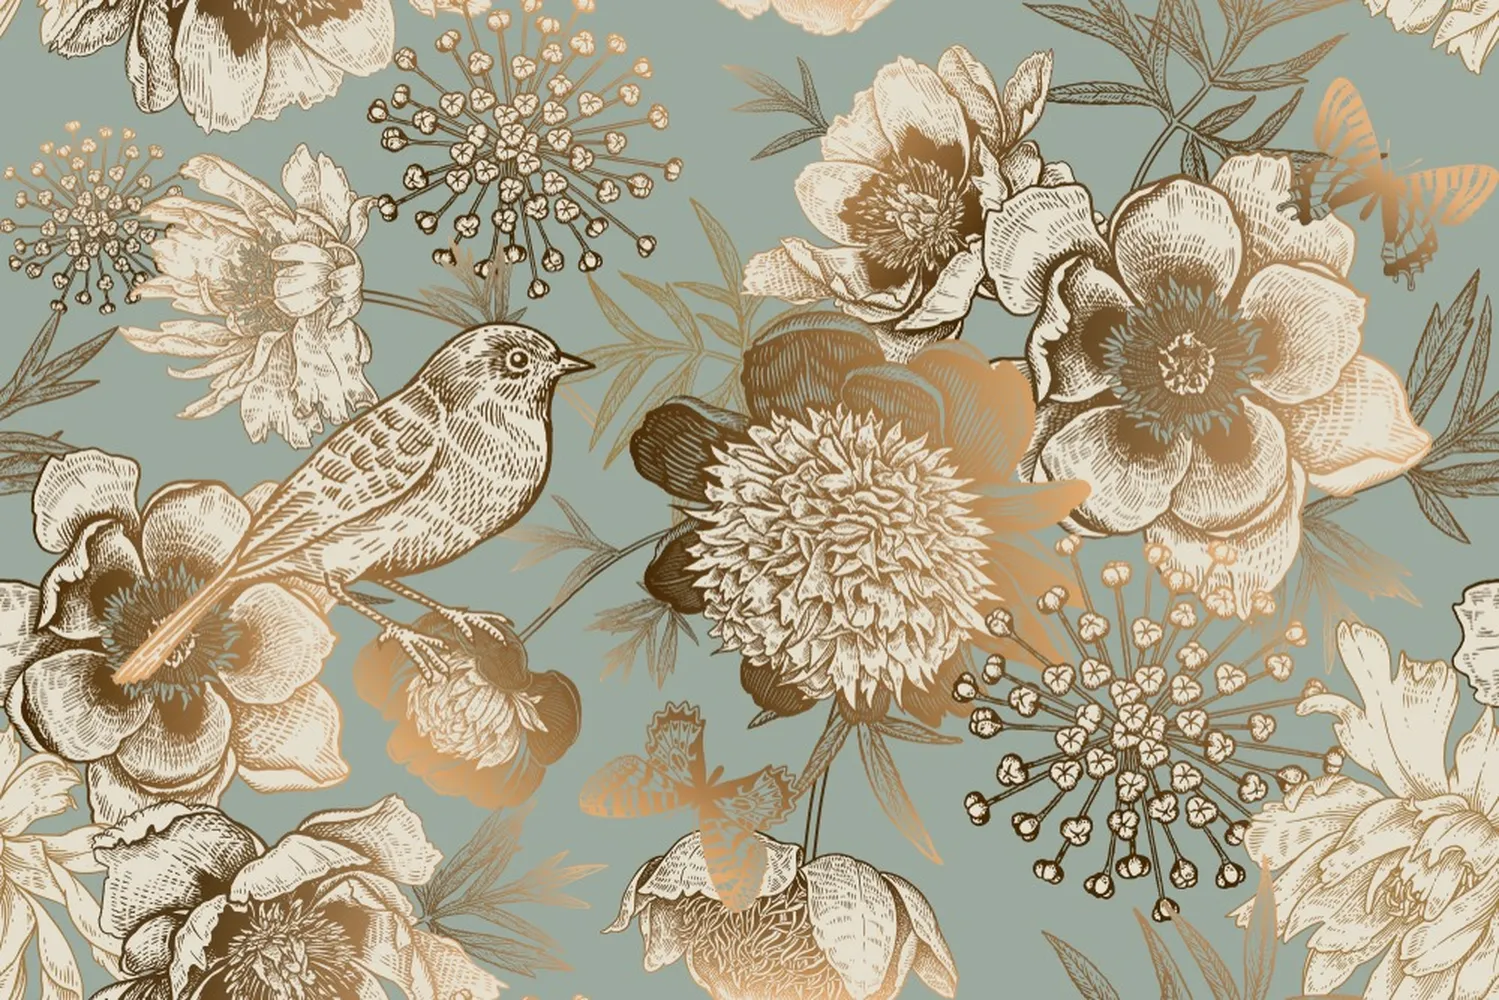 پوستر دیواری لوکس طرح گل و پرنده طلایی